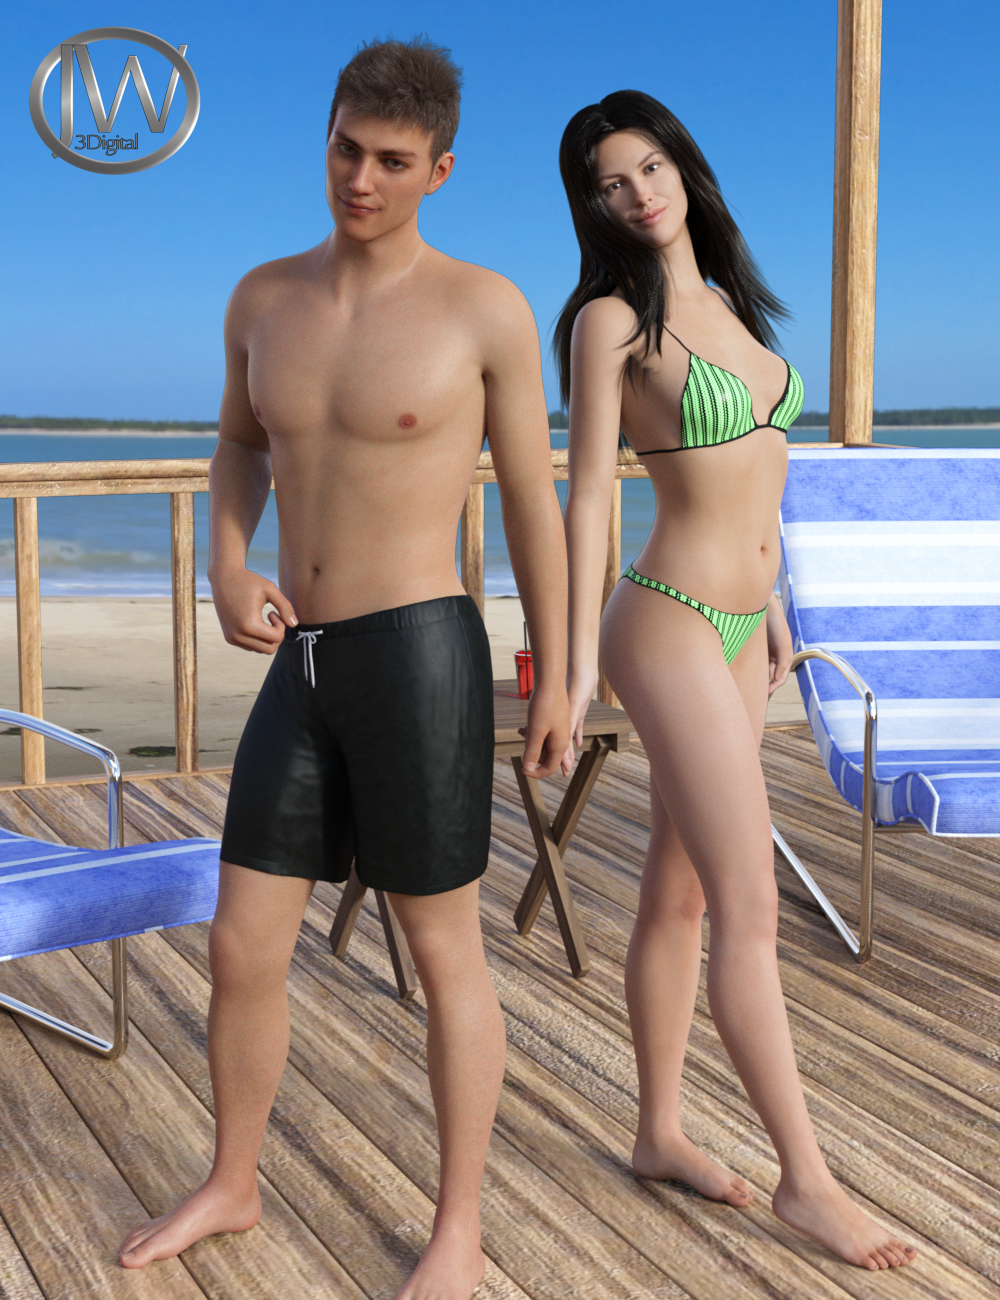 JW Swimsuit Set for Genesis 8 by: JWolf, 3D Models by Daz 3D